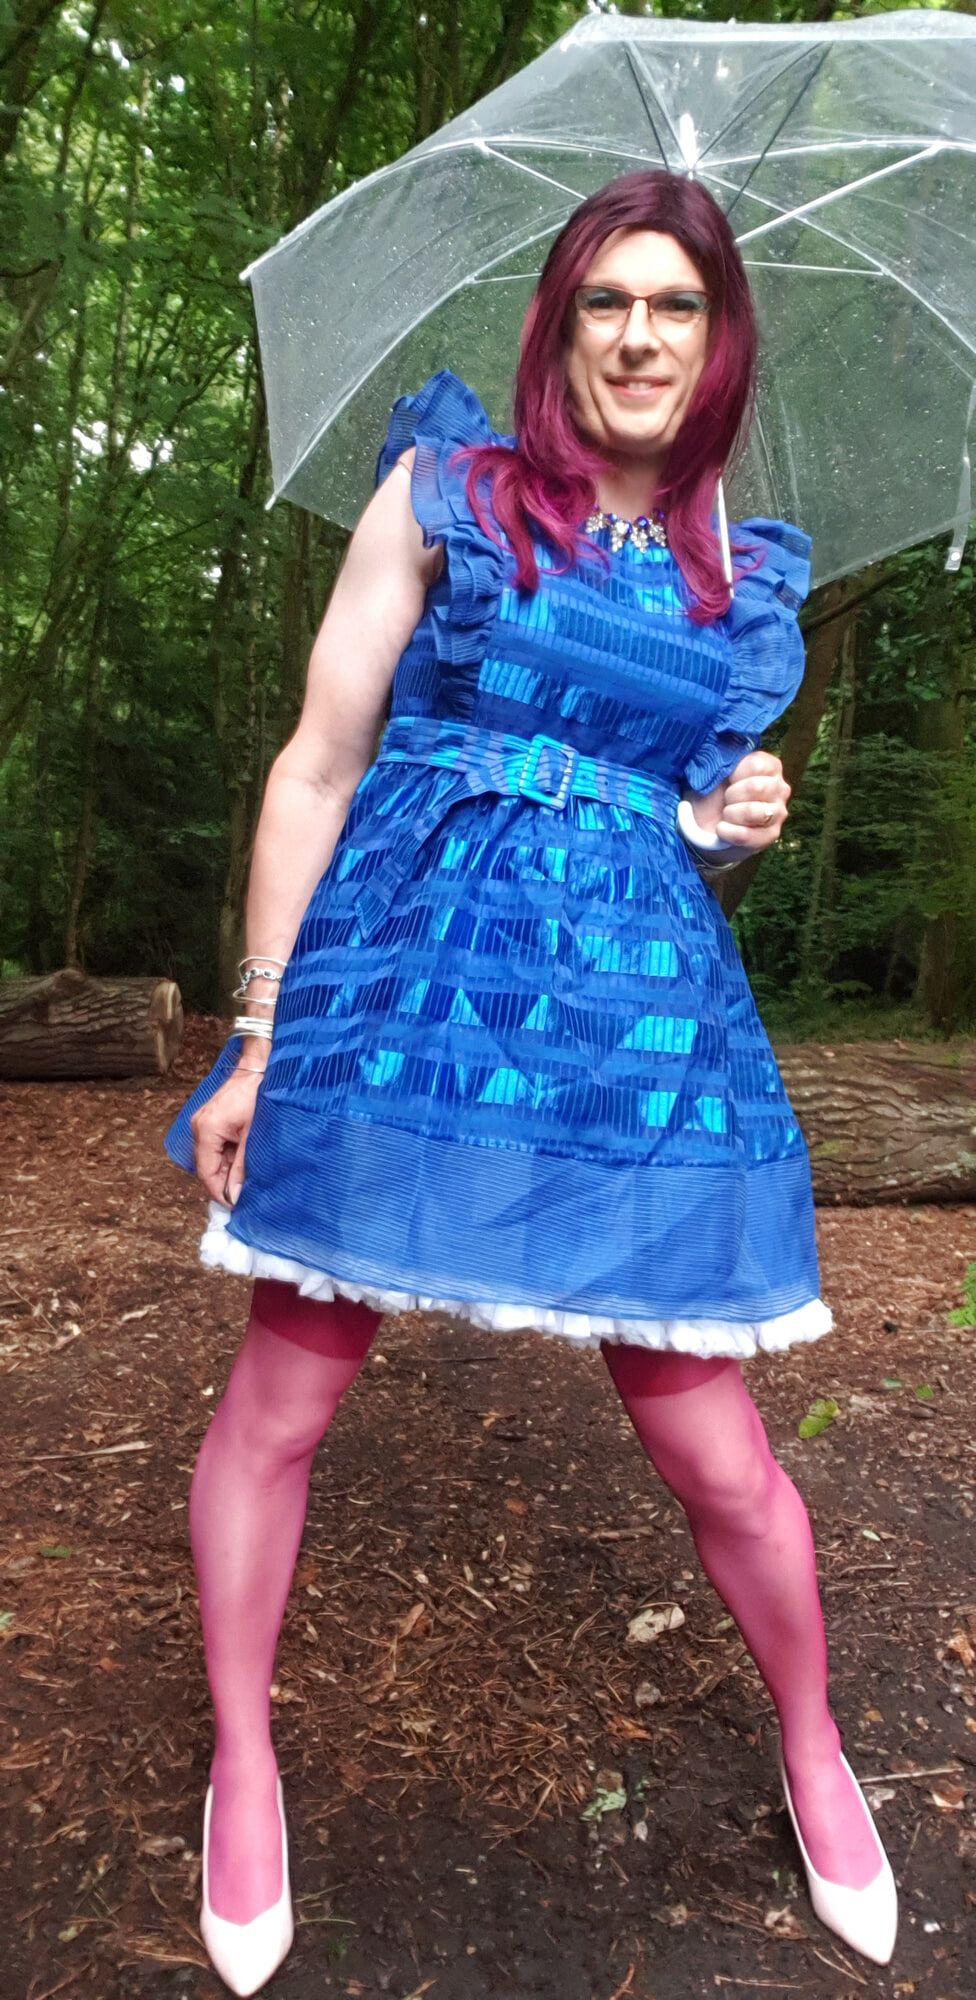 Blue Dress in the rain in July #3